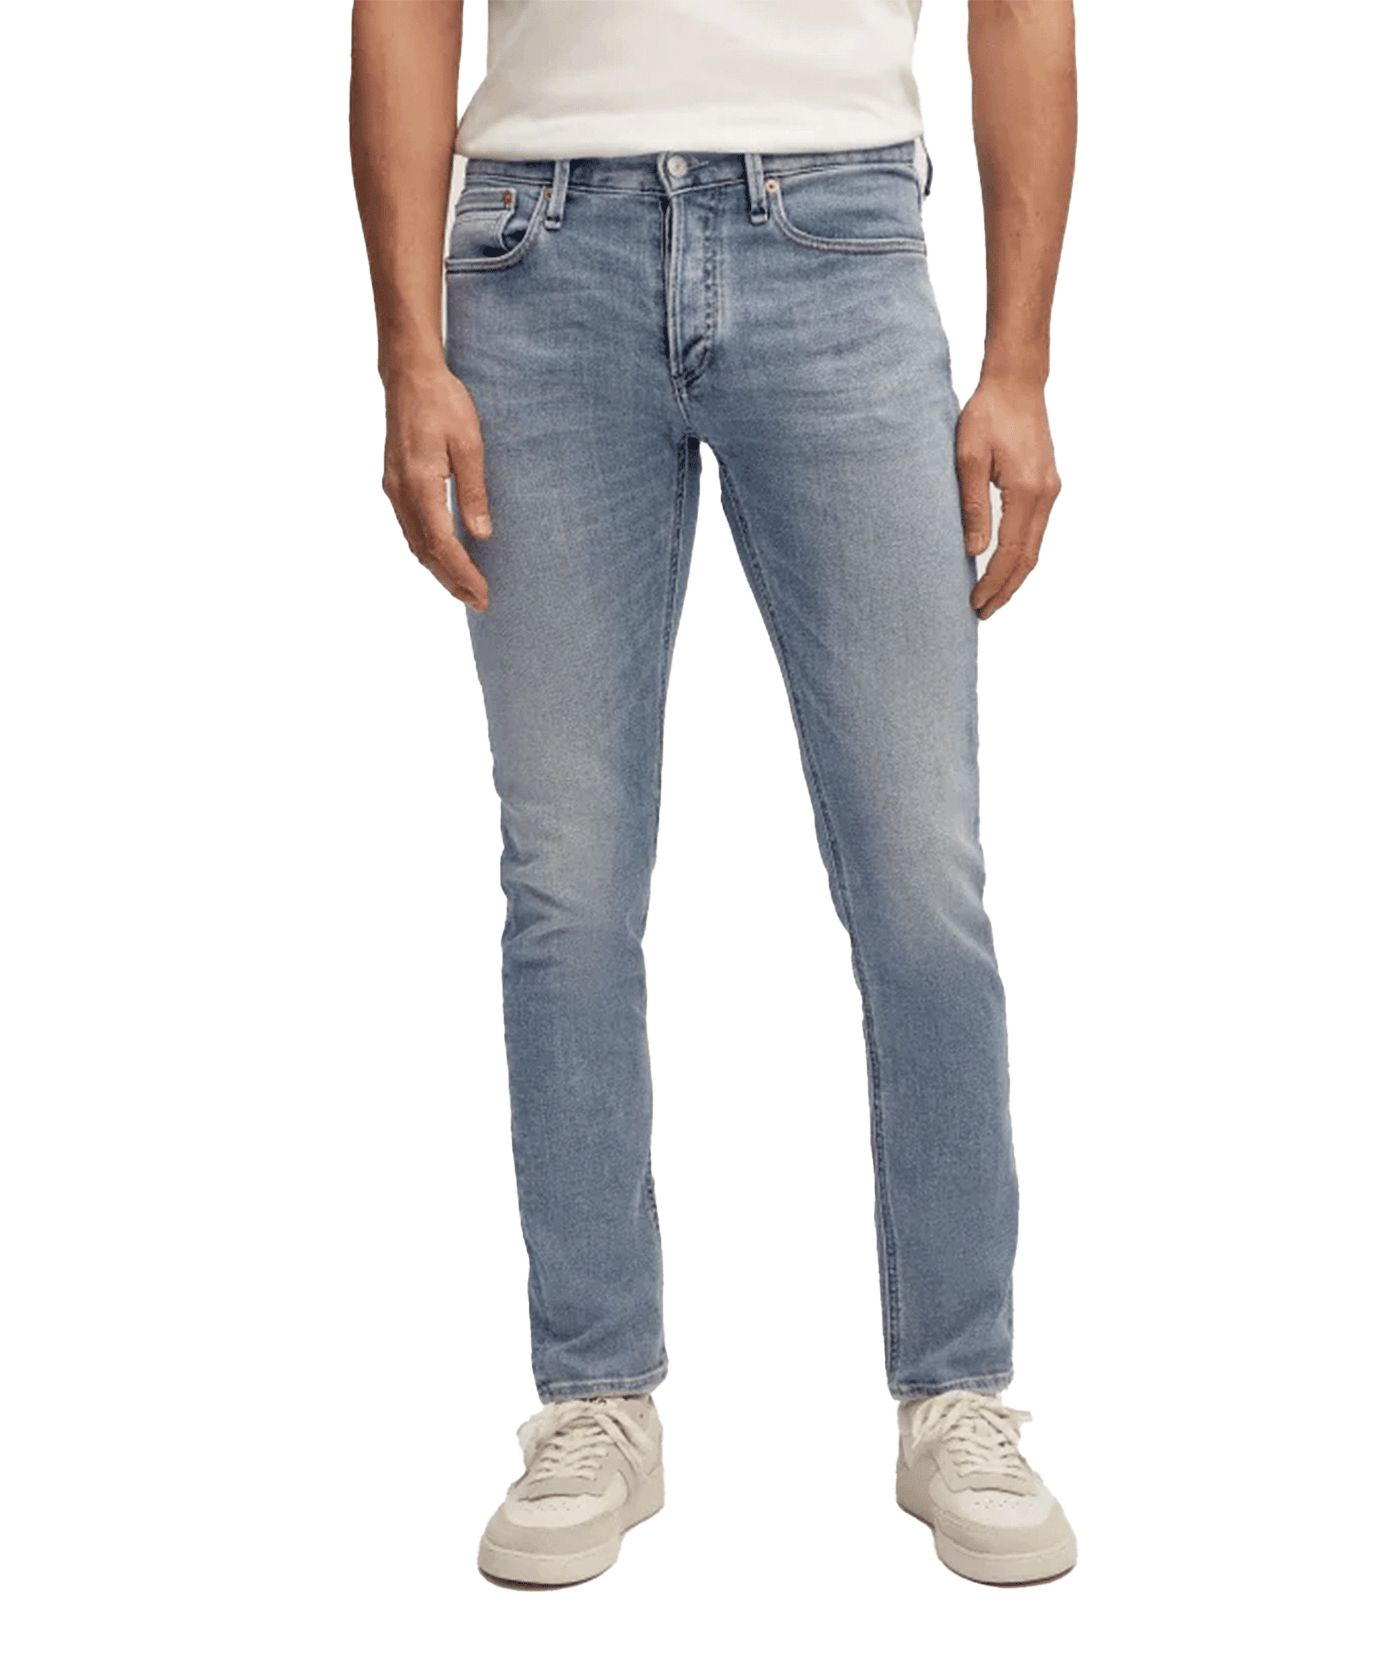 Denham - Razor - Jeans - Authentic Medium Worn